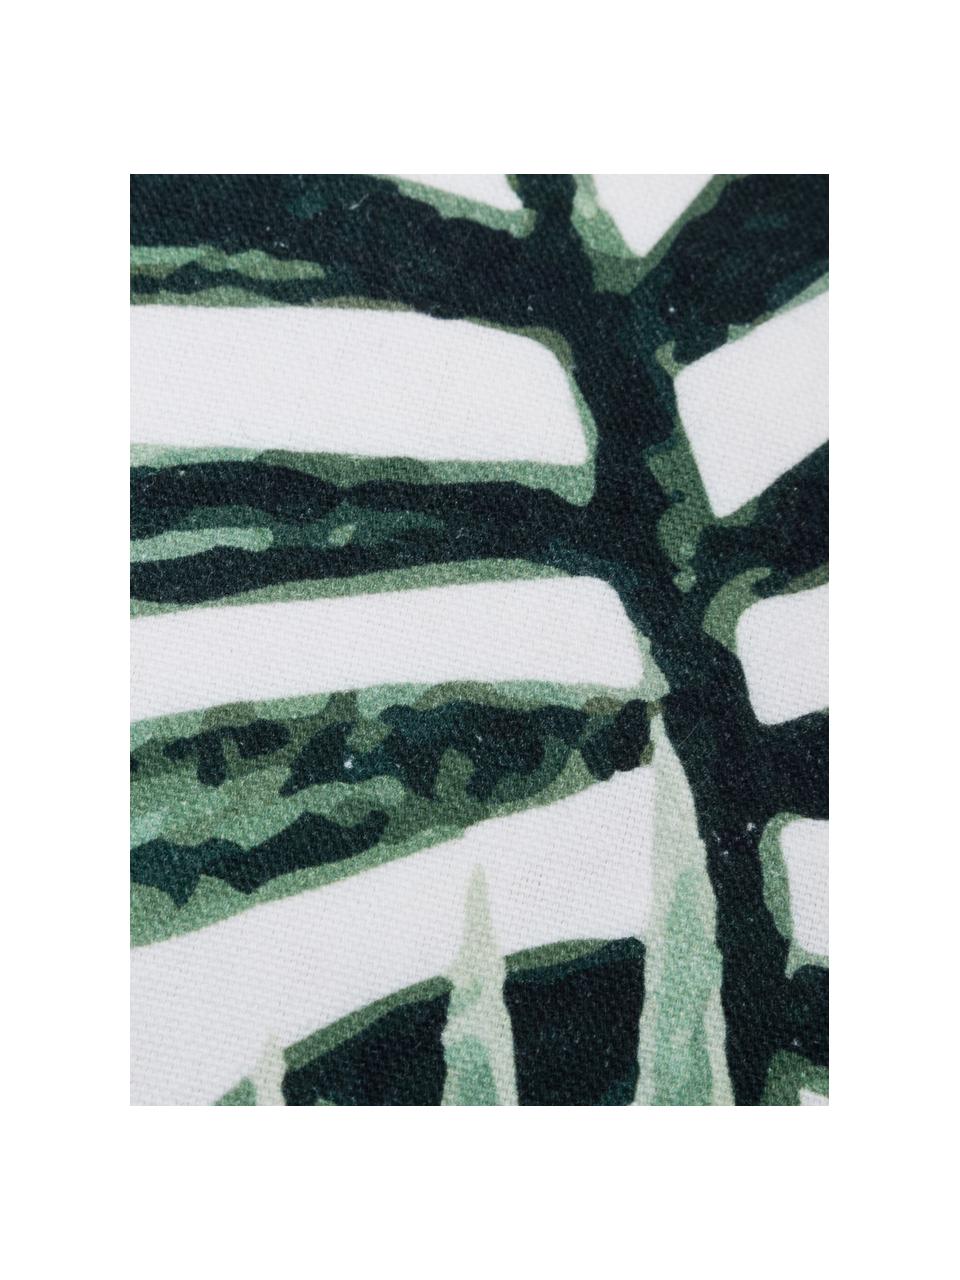 Baumwoll-Kissenhülle Coast mit Blattmuster, 100% Baumwolle, Grün, Weiß, B 40 x L 40 cm